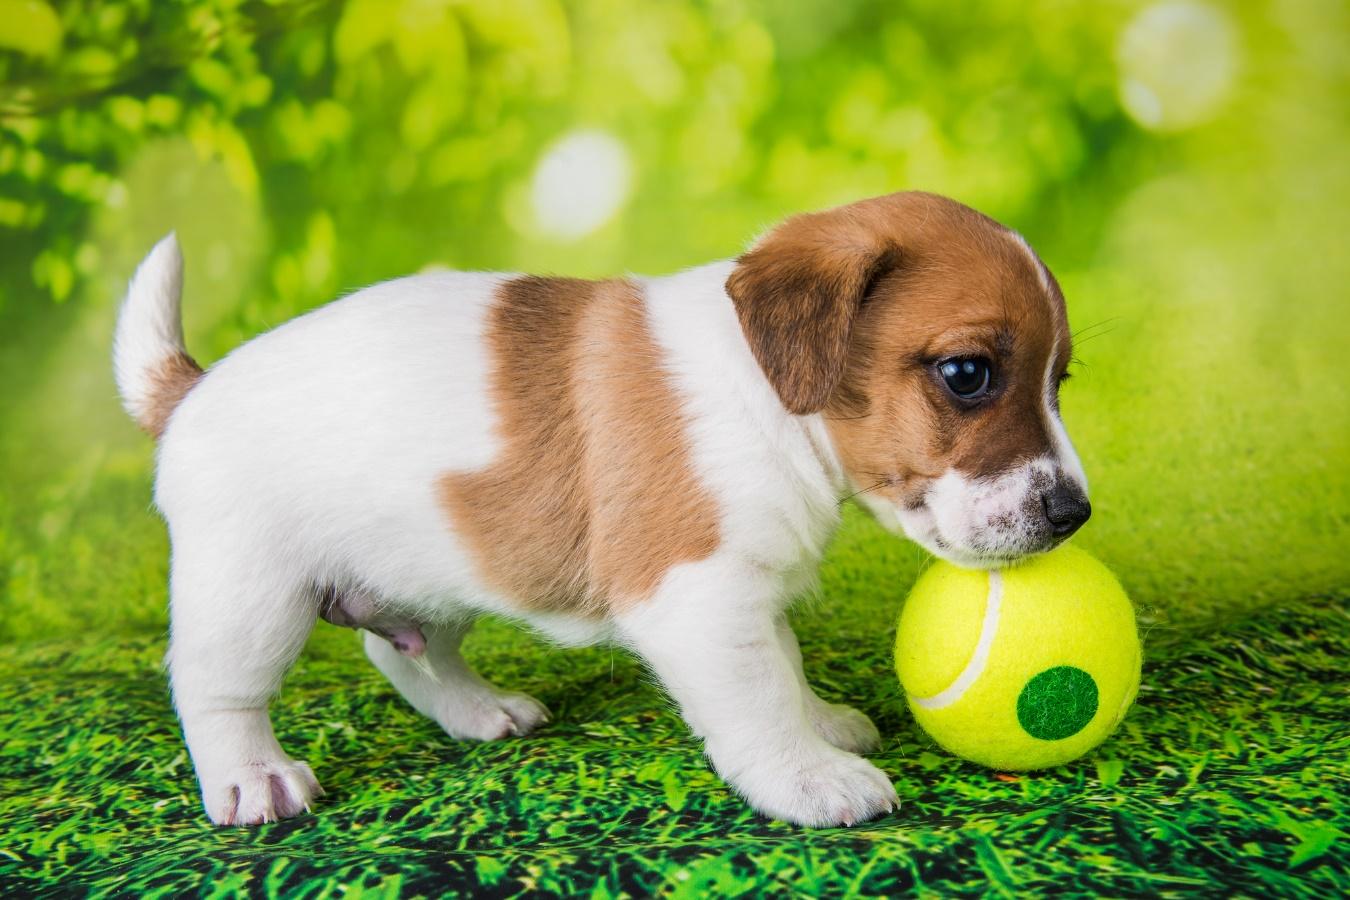 テニスボール風のおもちゃに近寄る子犬